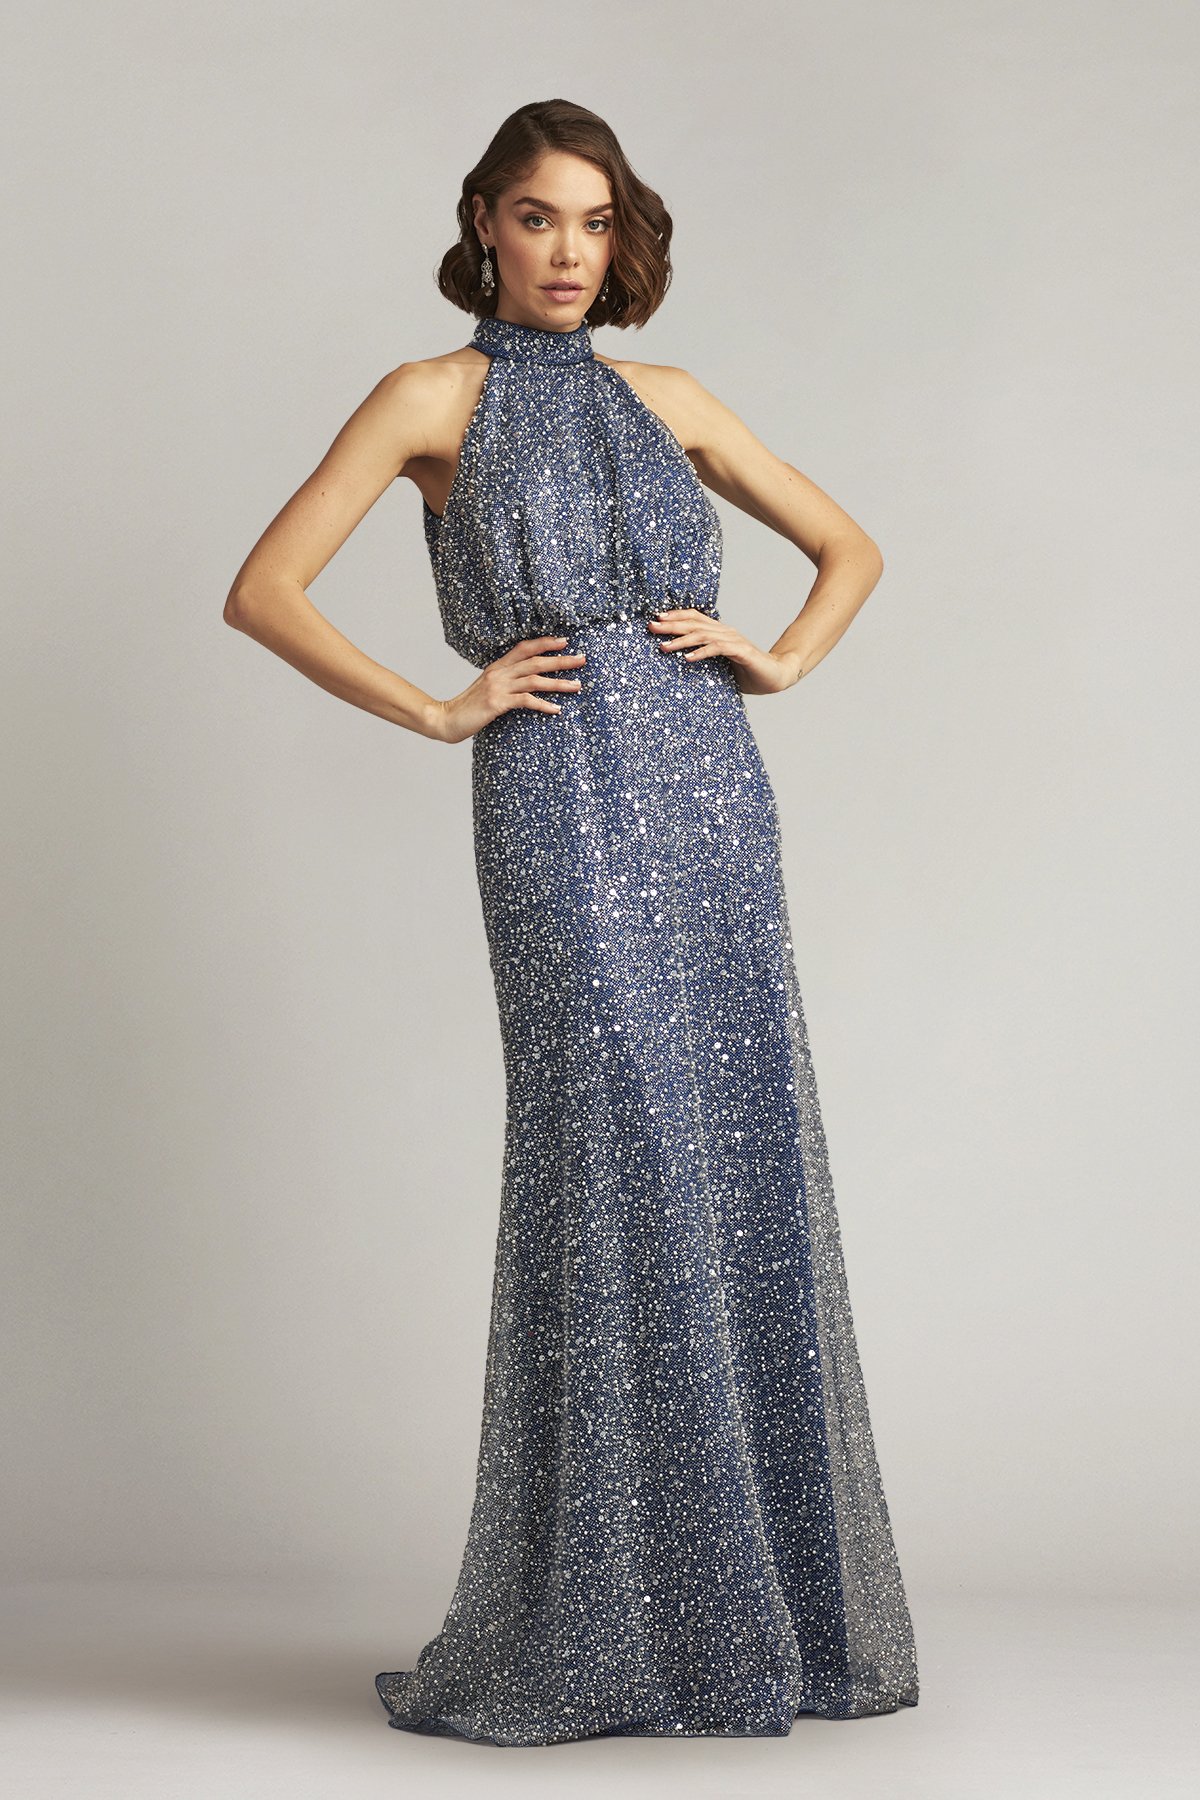 Embellished Halter Dress | ShopStyle